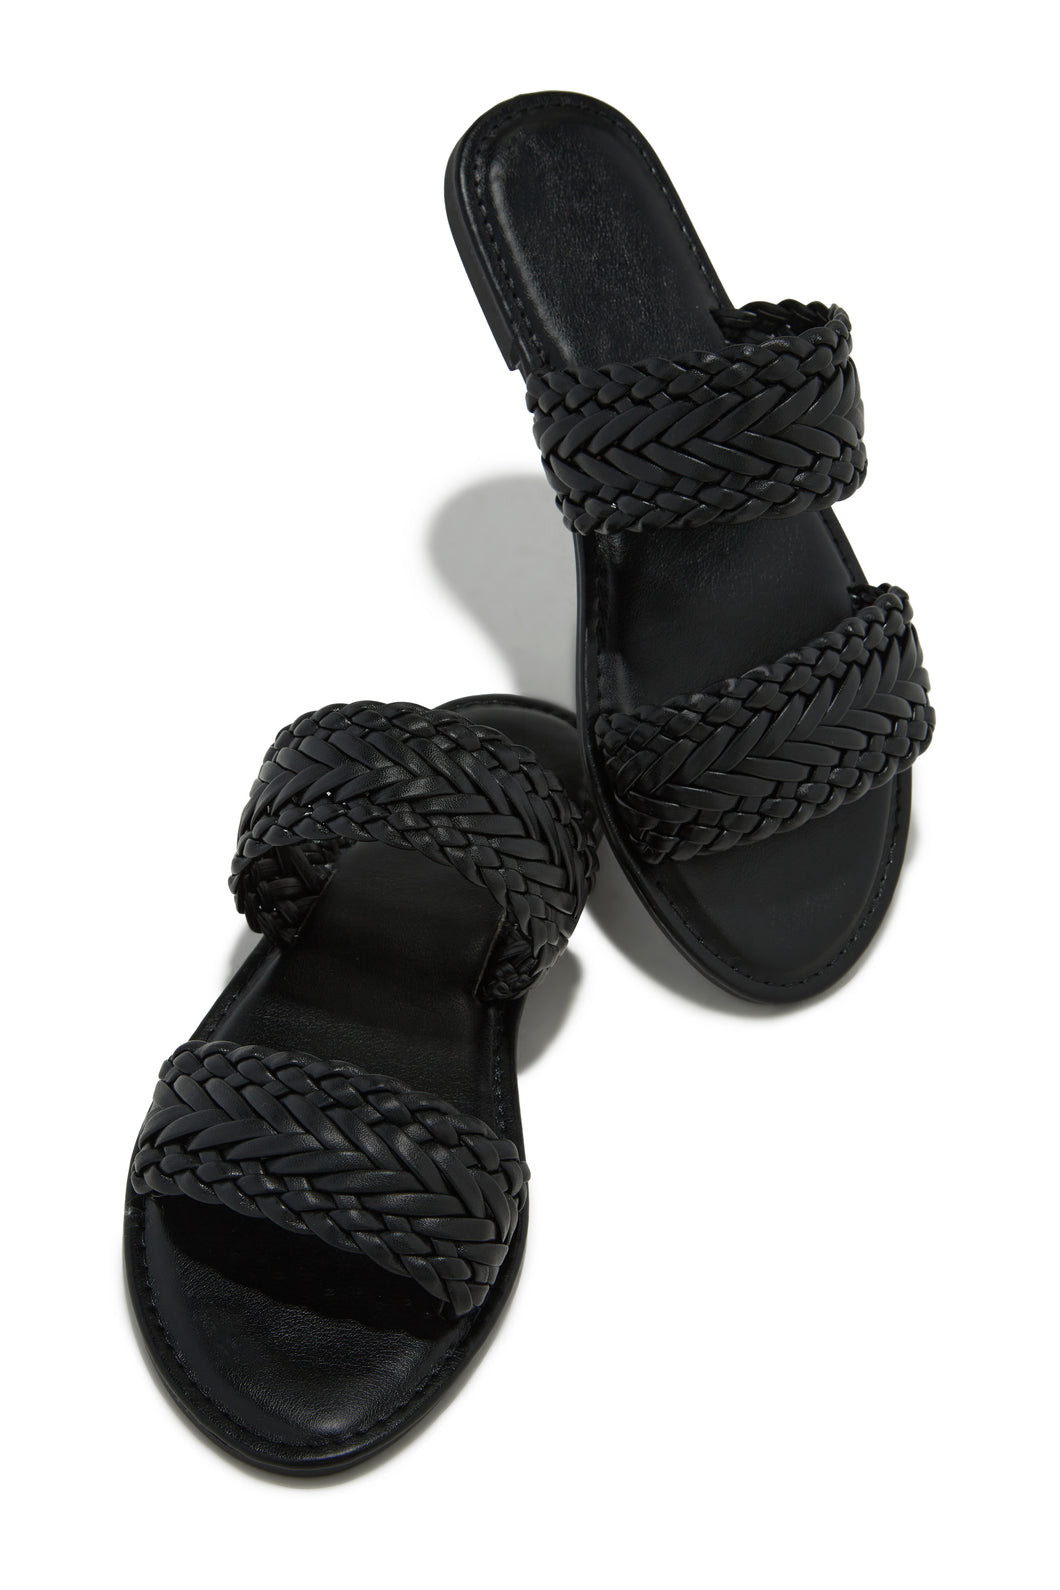 Black Slip On Woven Strap Sandals